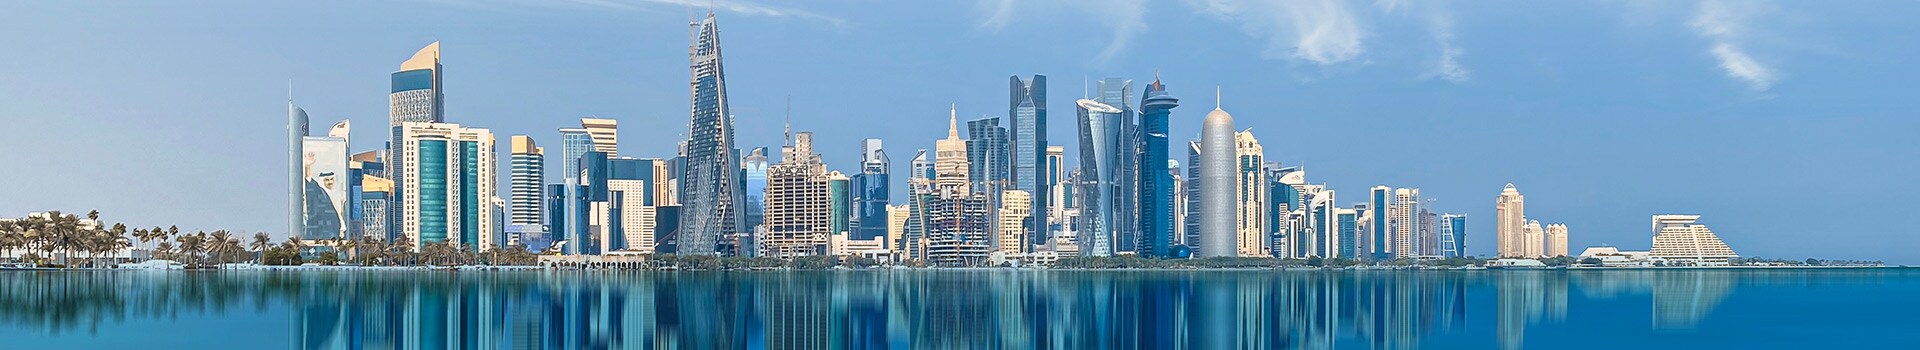 Francoforte - Doha